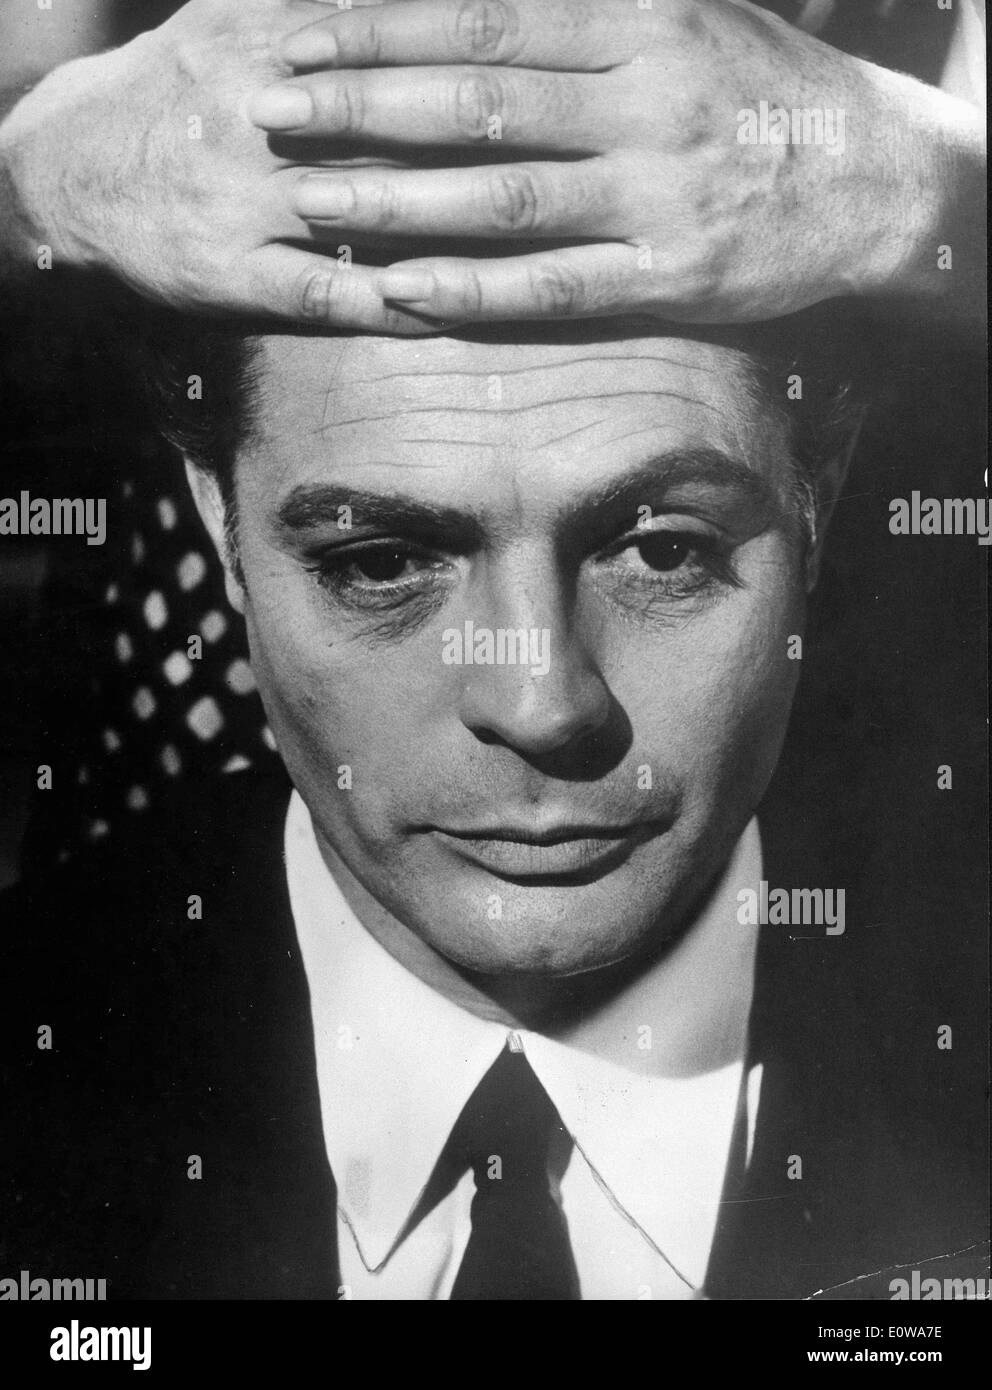 Retrato de Marcello Mastroianni con las manos en su frente Foto de stock